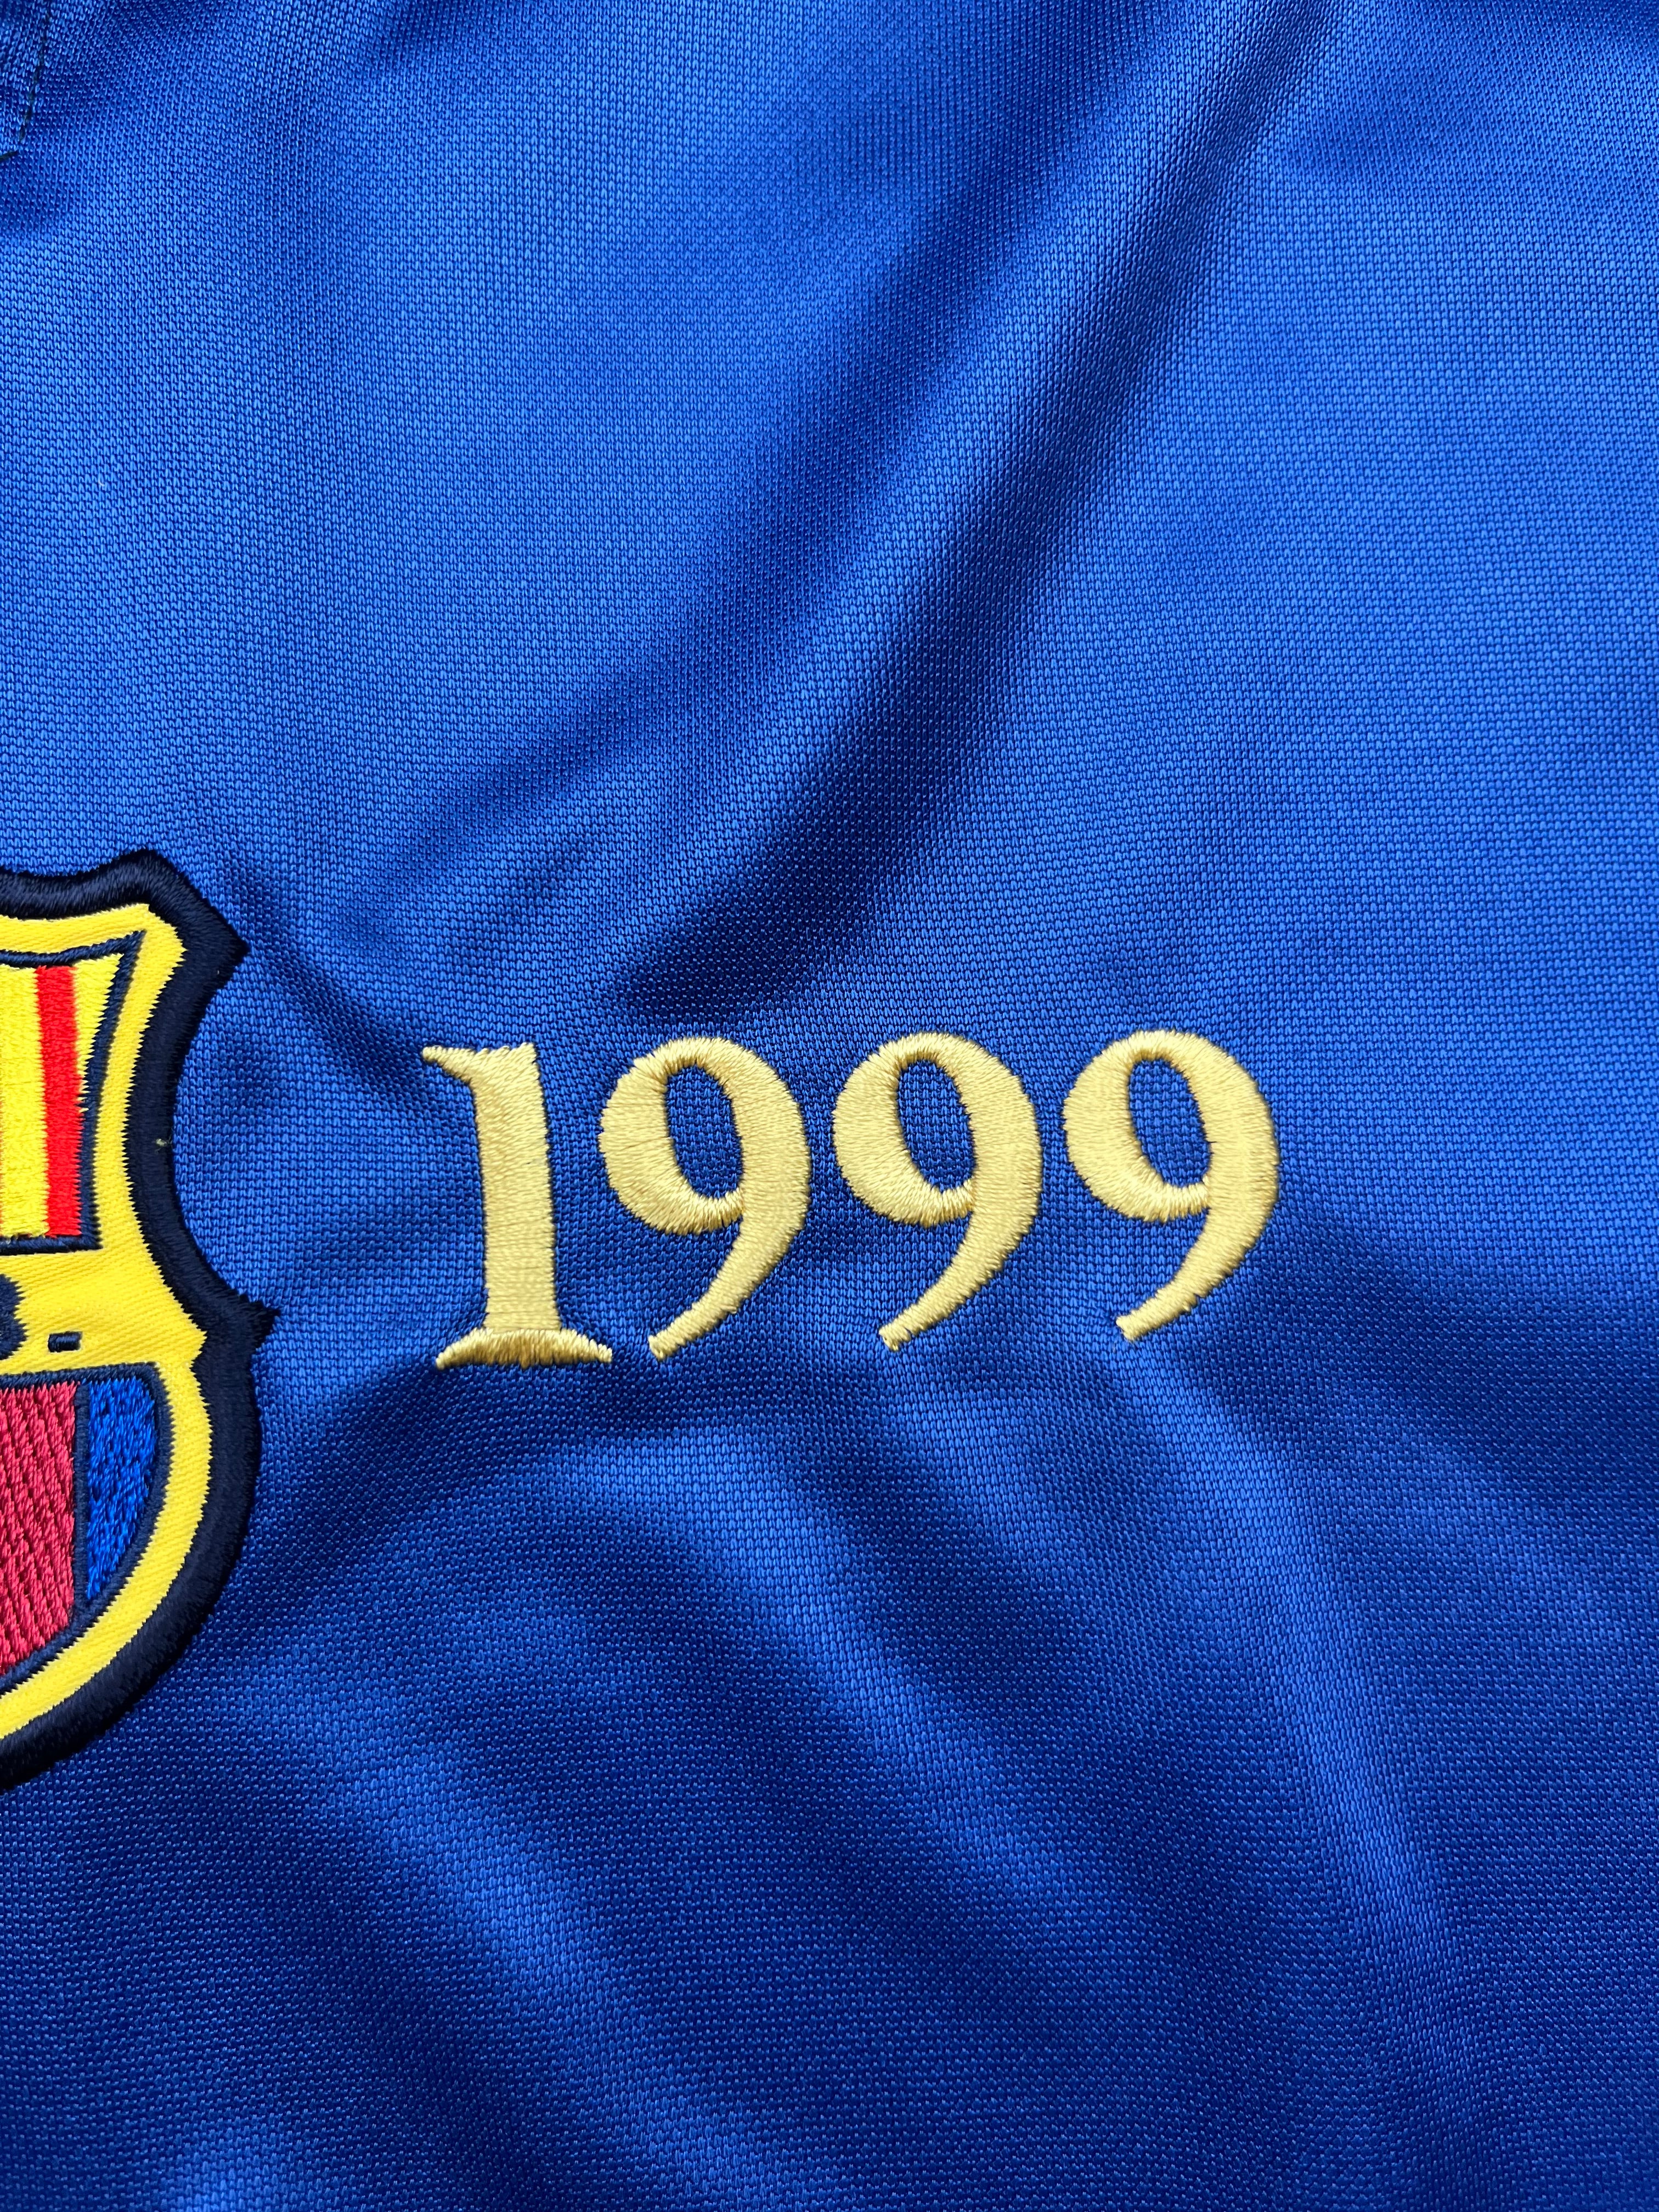 1999/00 Barcelona Home *Centenary* Shirt (L) 8.5/10